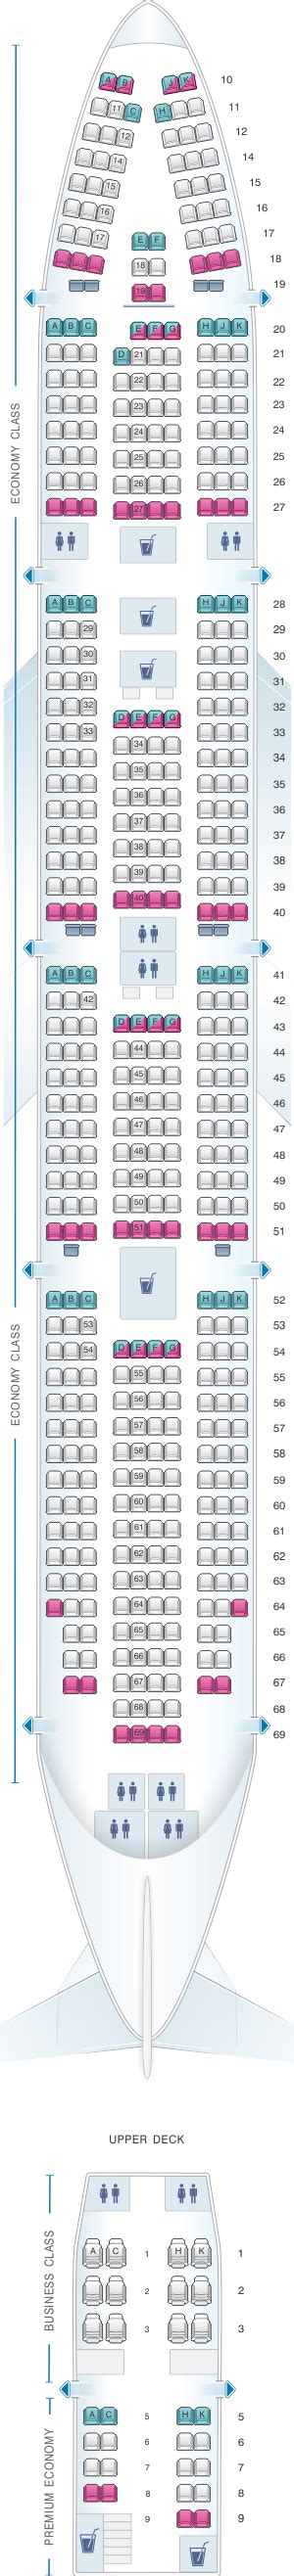 Boeing 747 Seating Plan